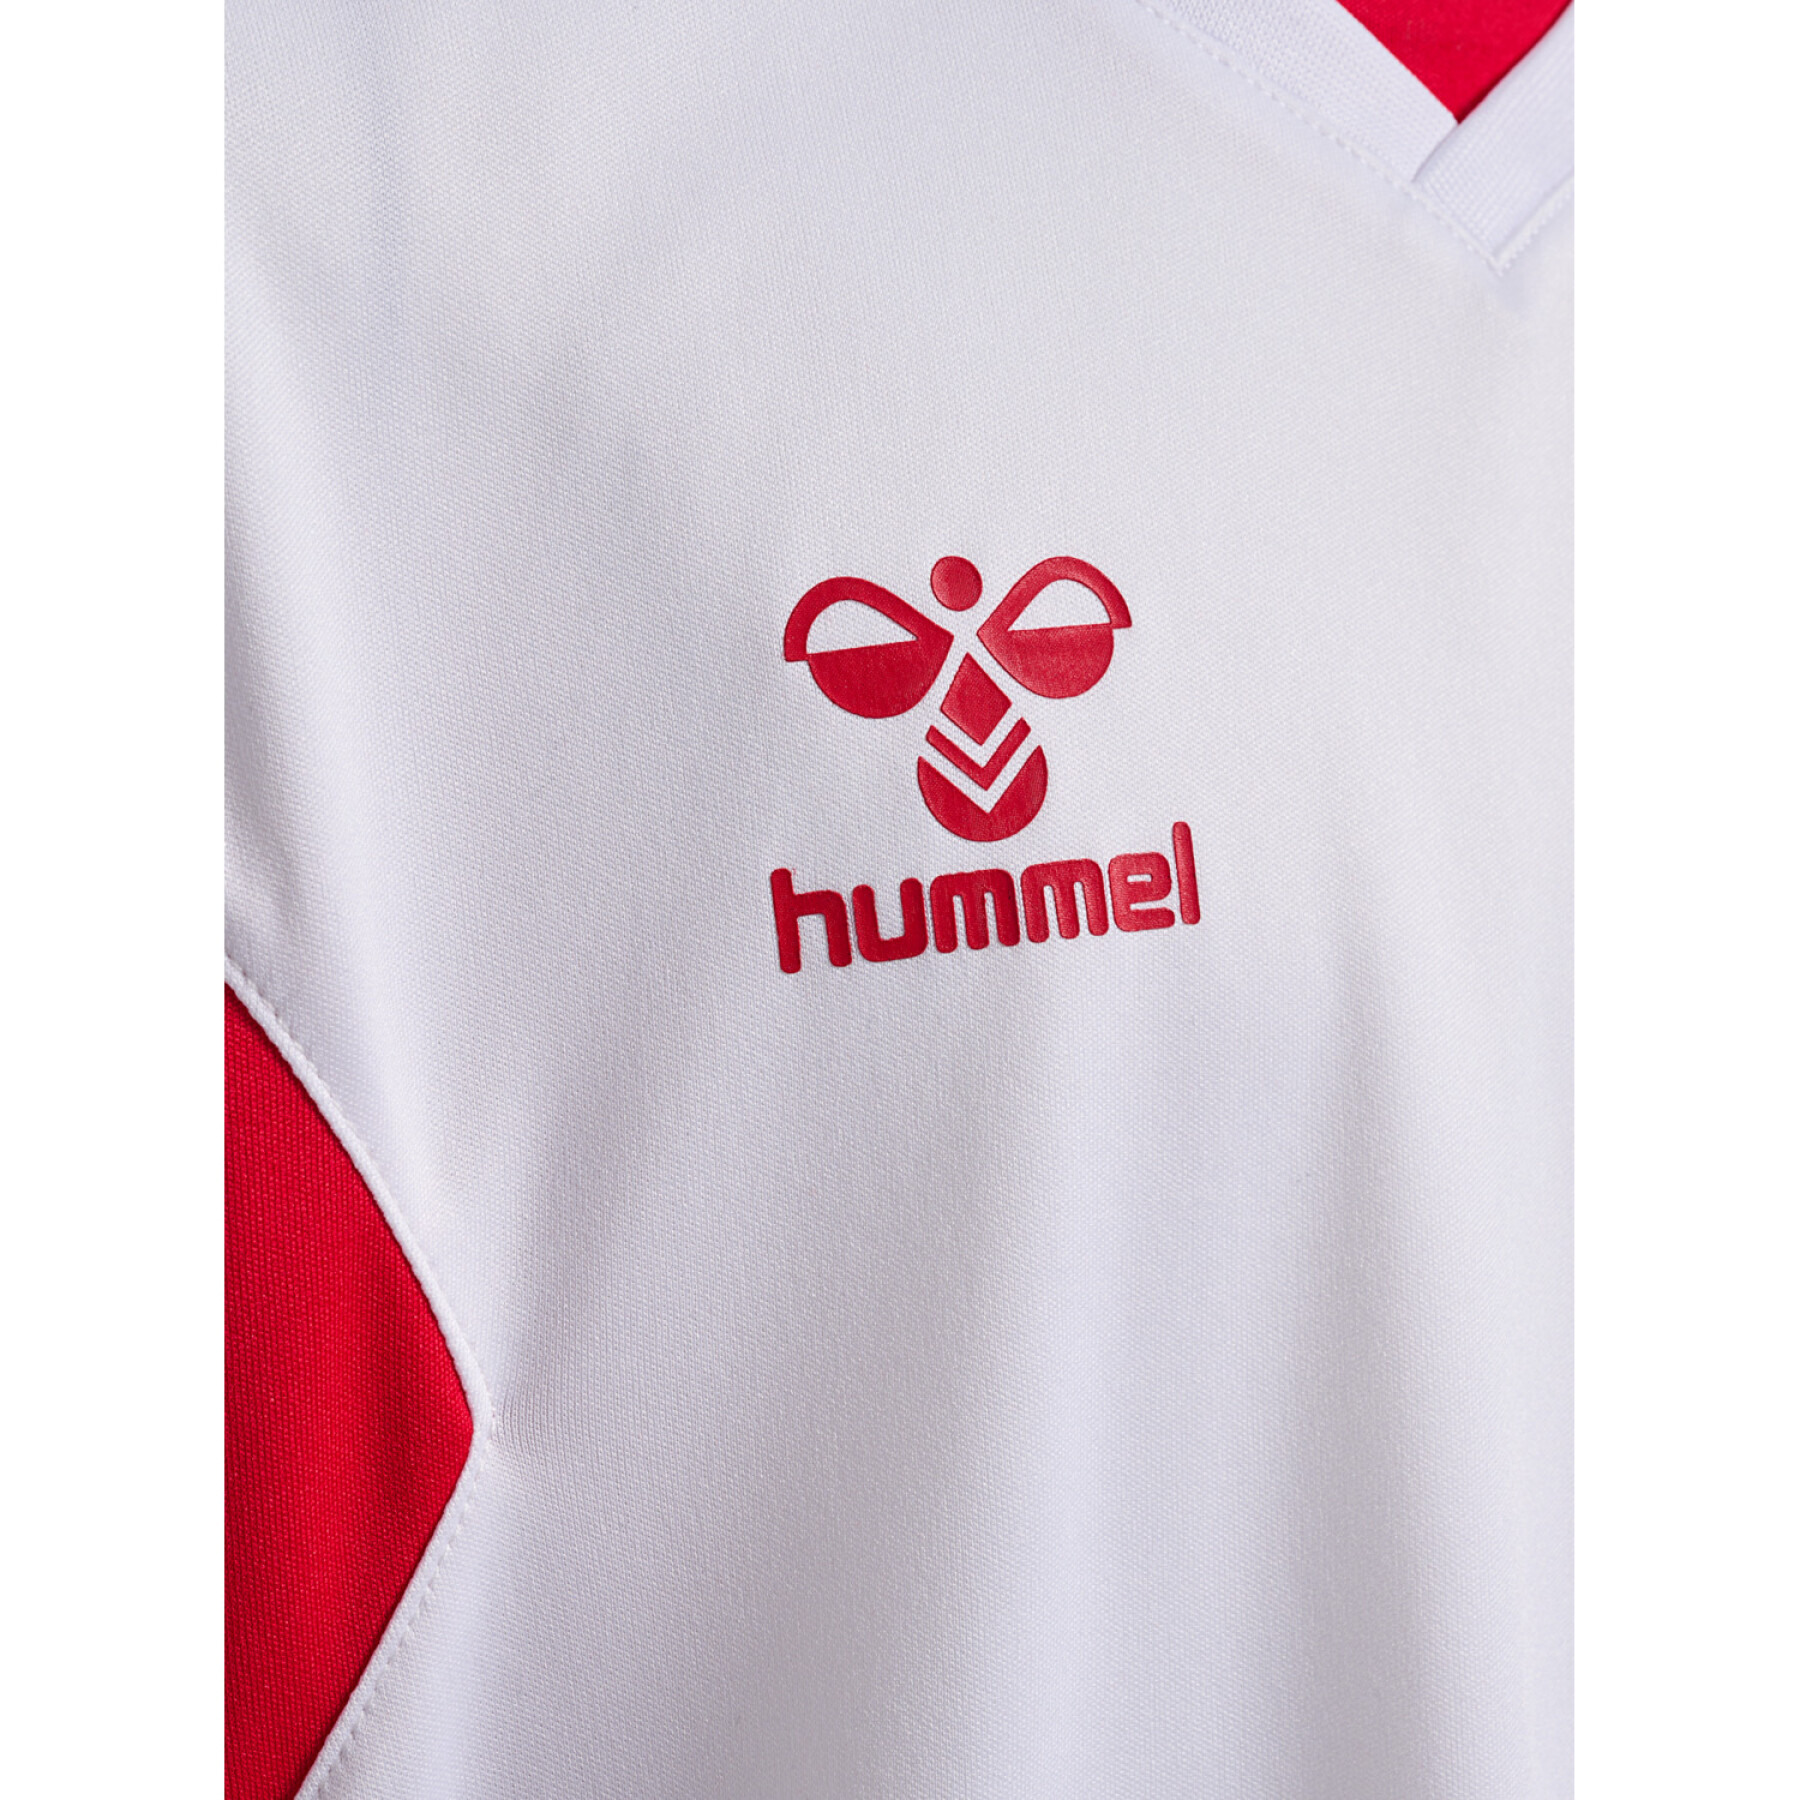 Children's jersey Hummel Authentic PL